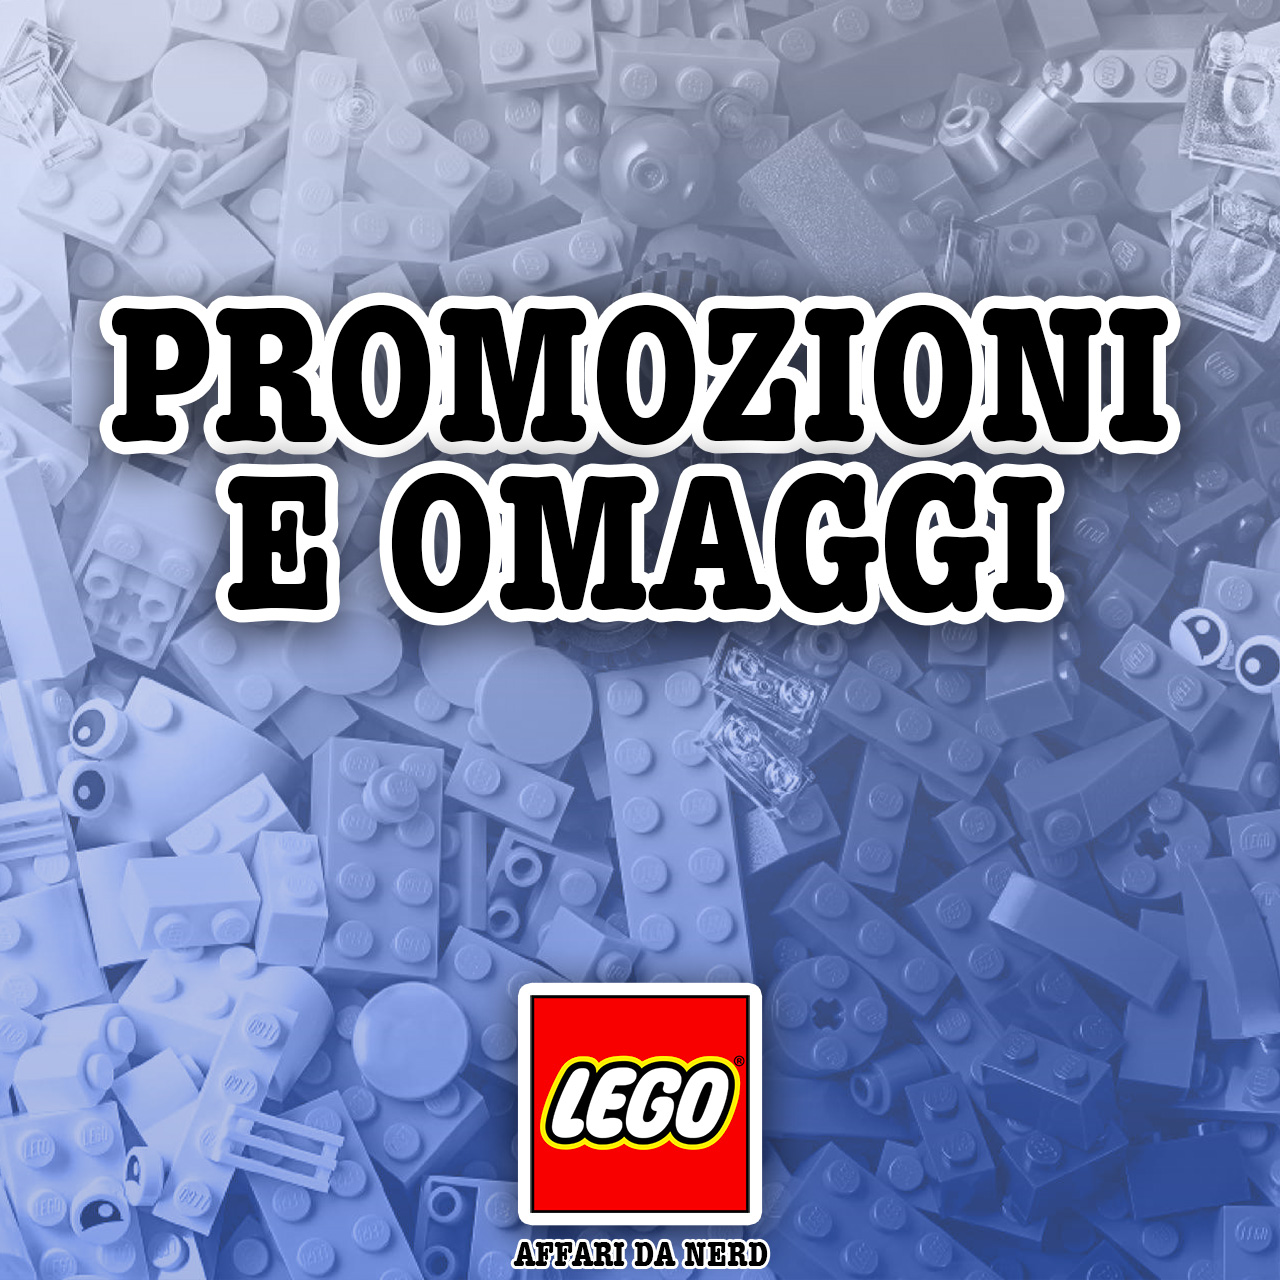 Promozioni e Omaggi LEGO.com